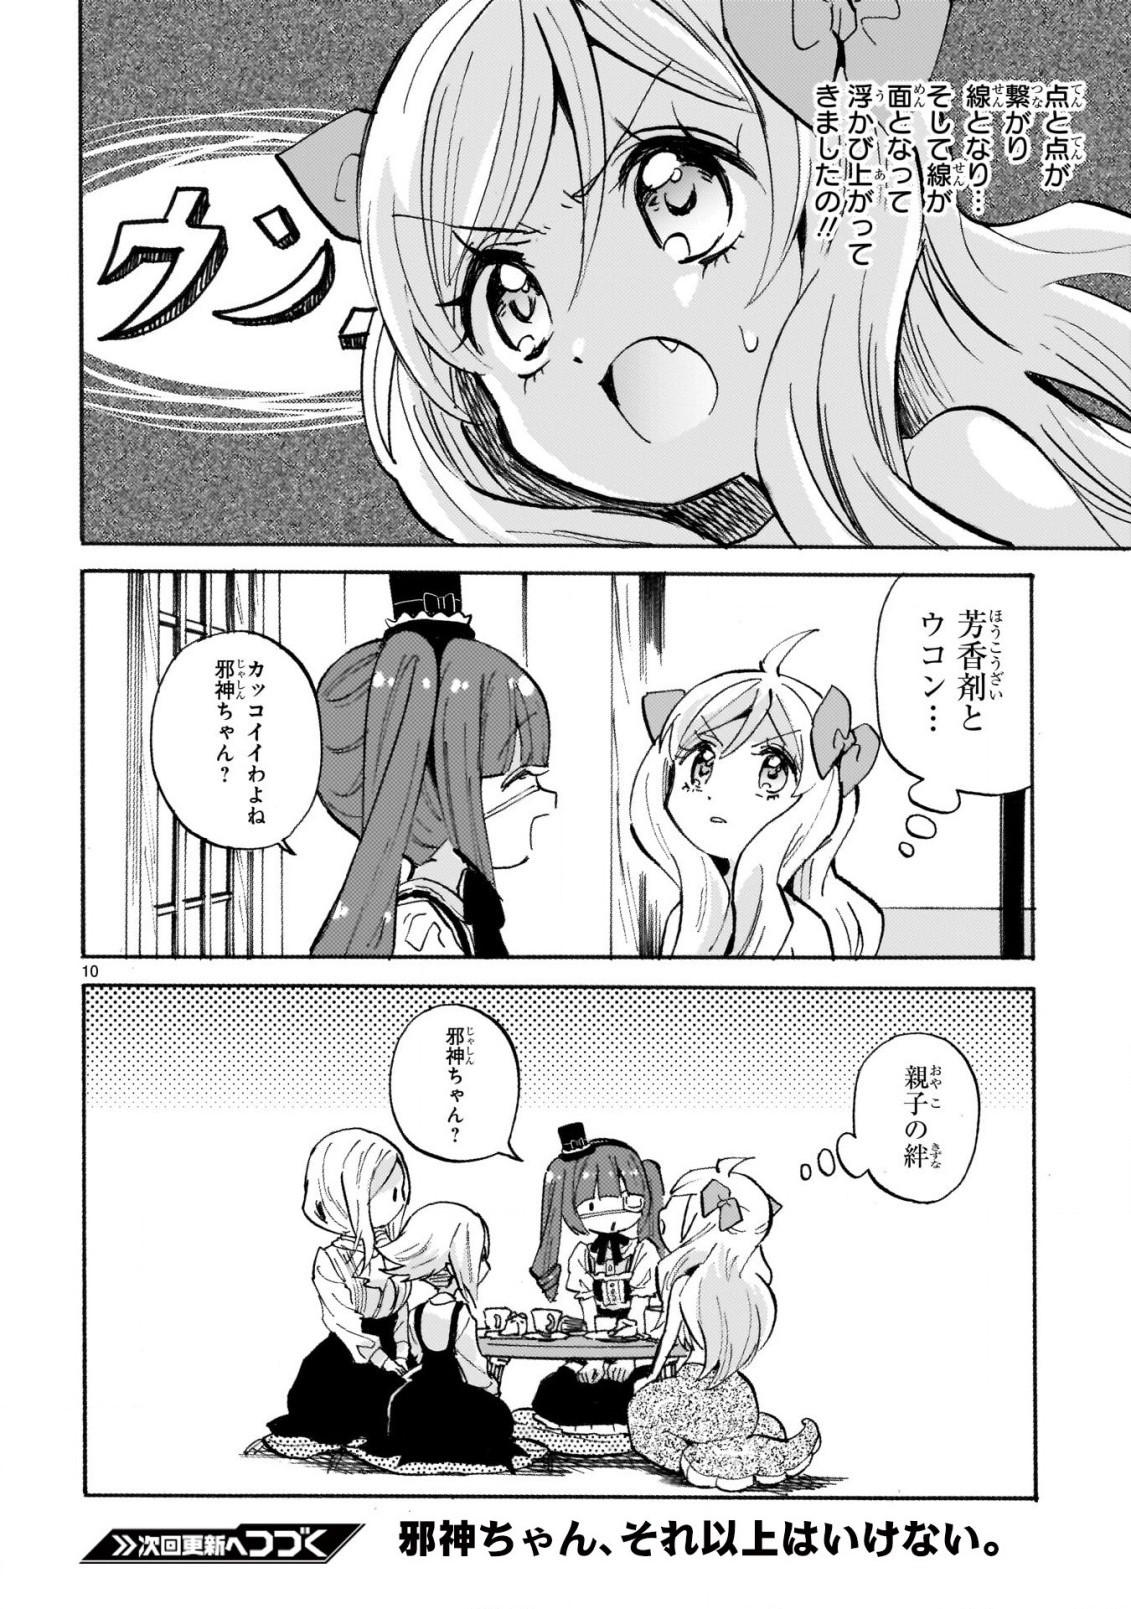 Jashin-chan Dropkick - Chapter 242 - Page 10